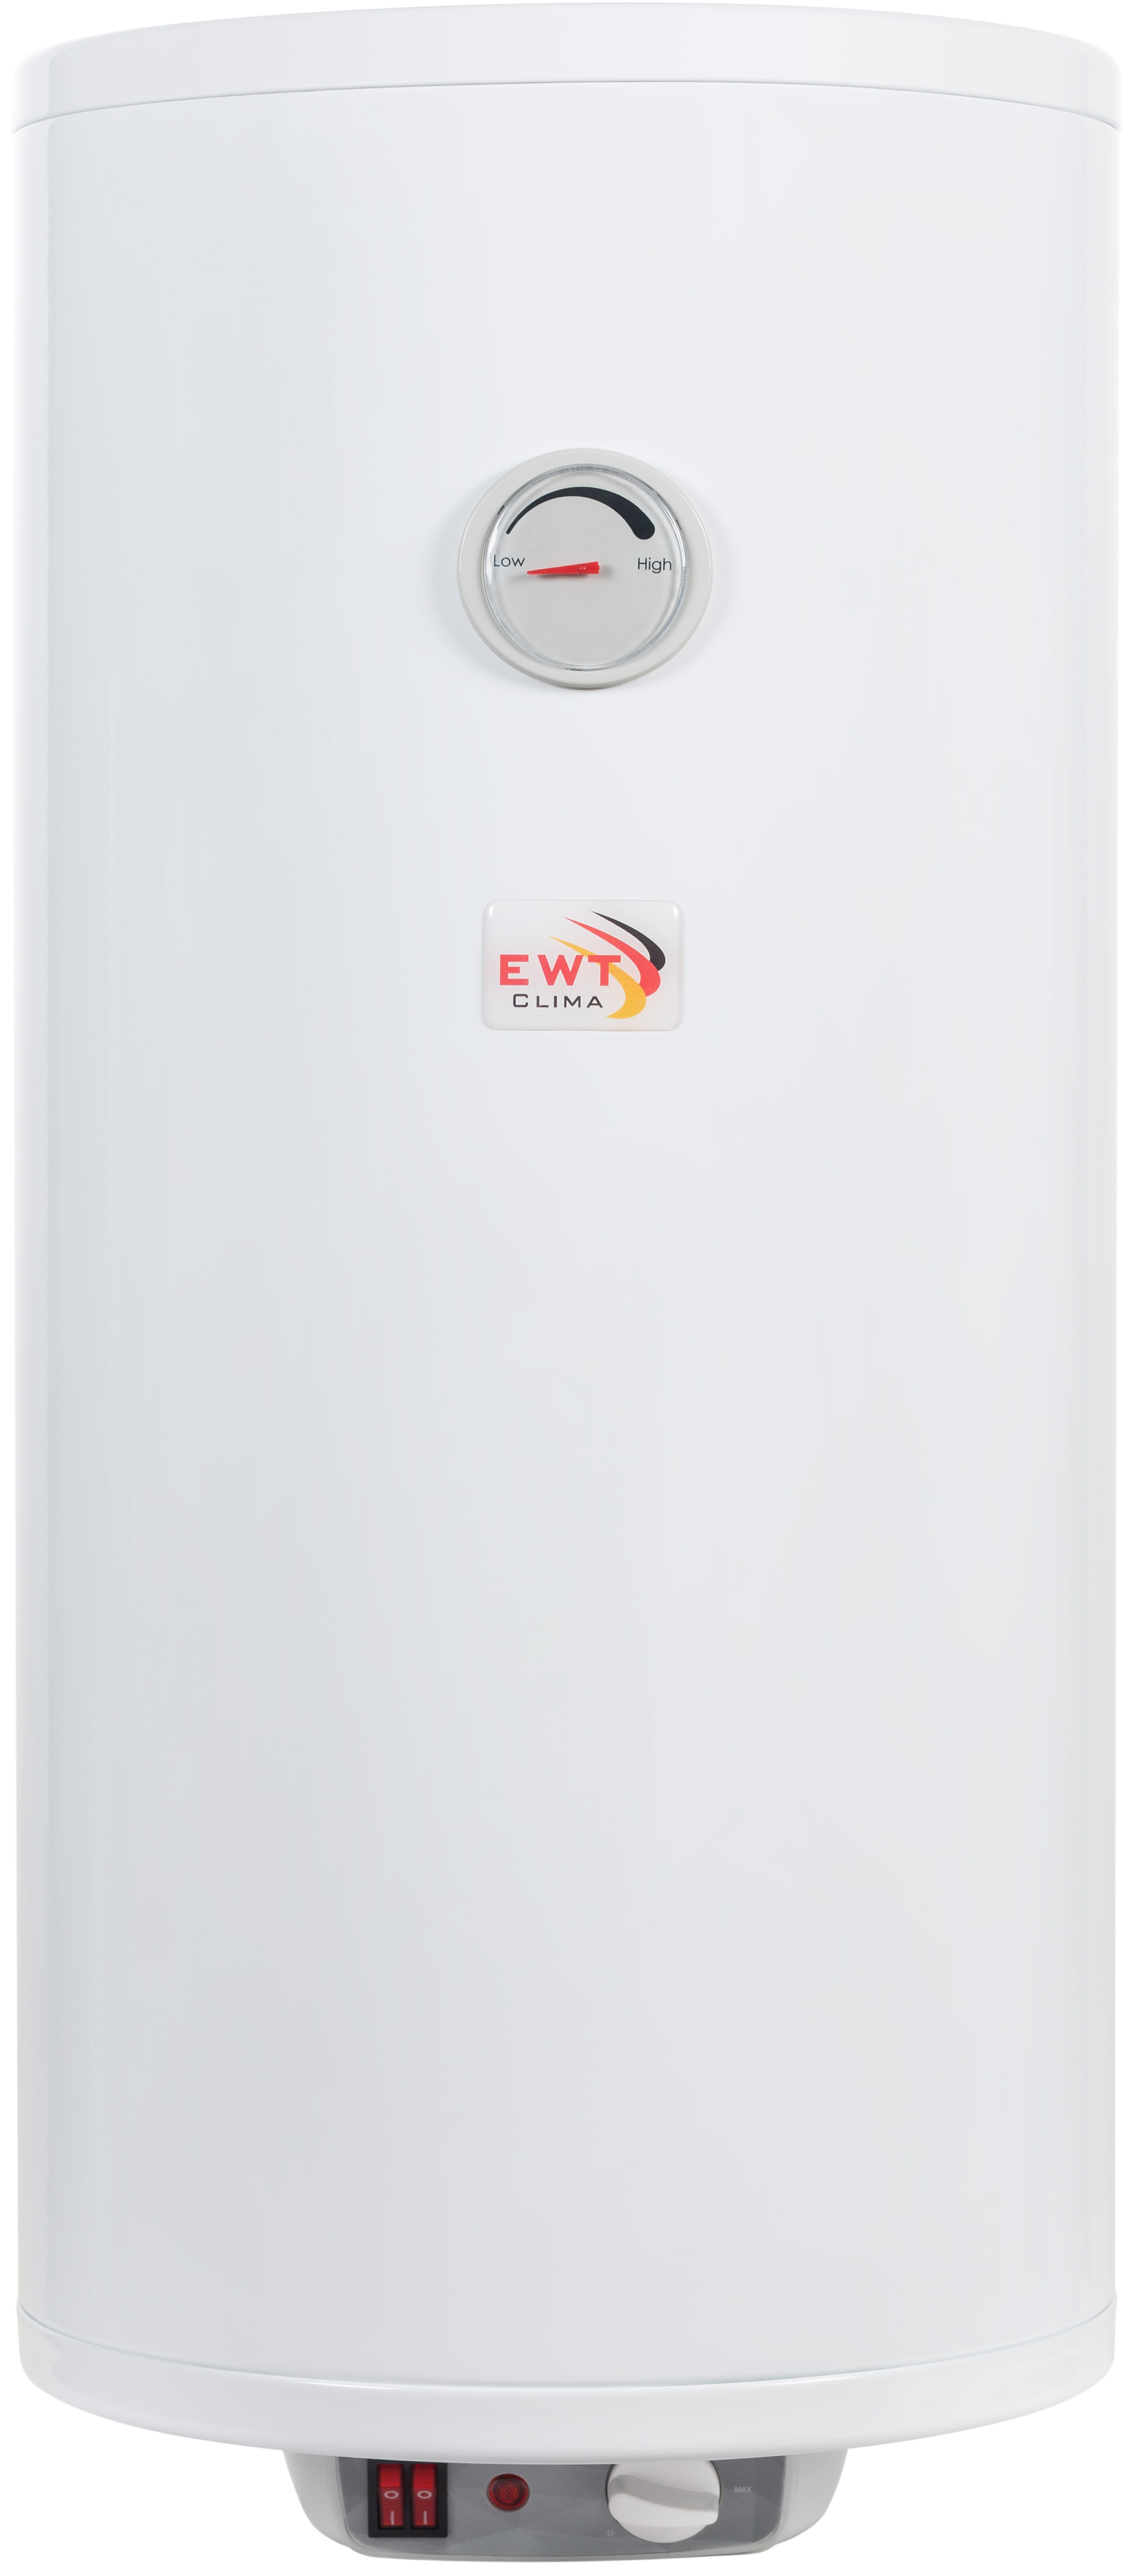 EWT Clima Runde Dry Slim AWH/M 50 V